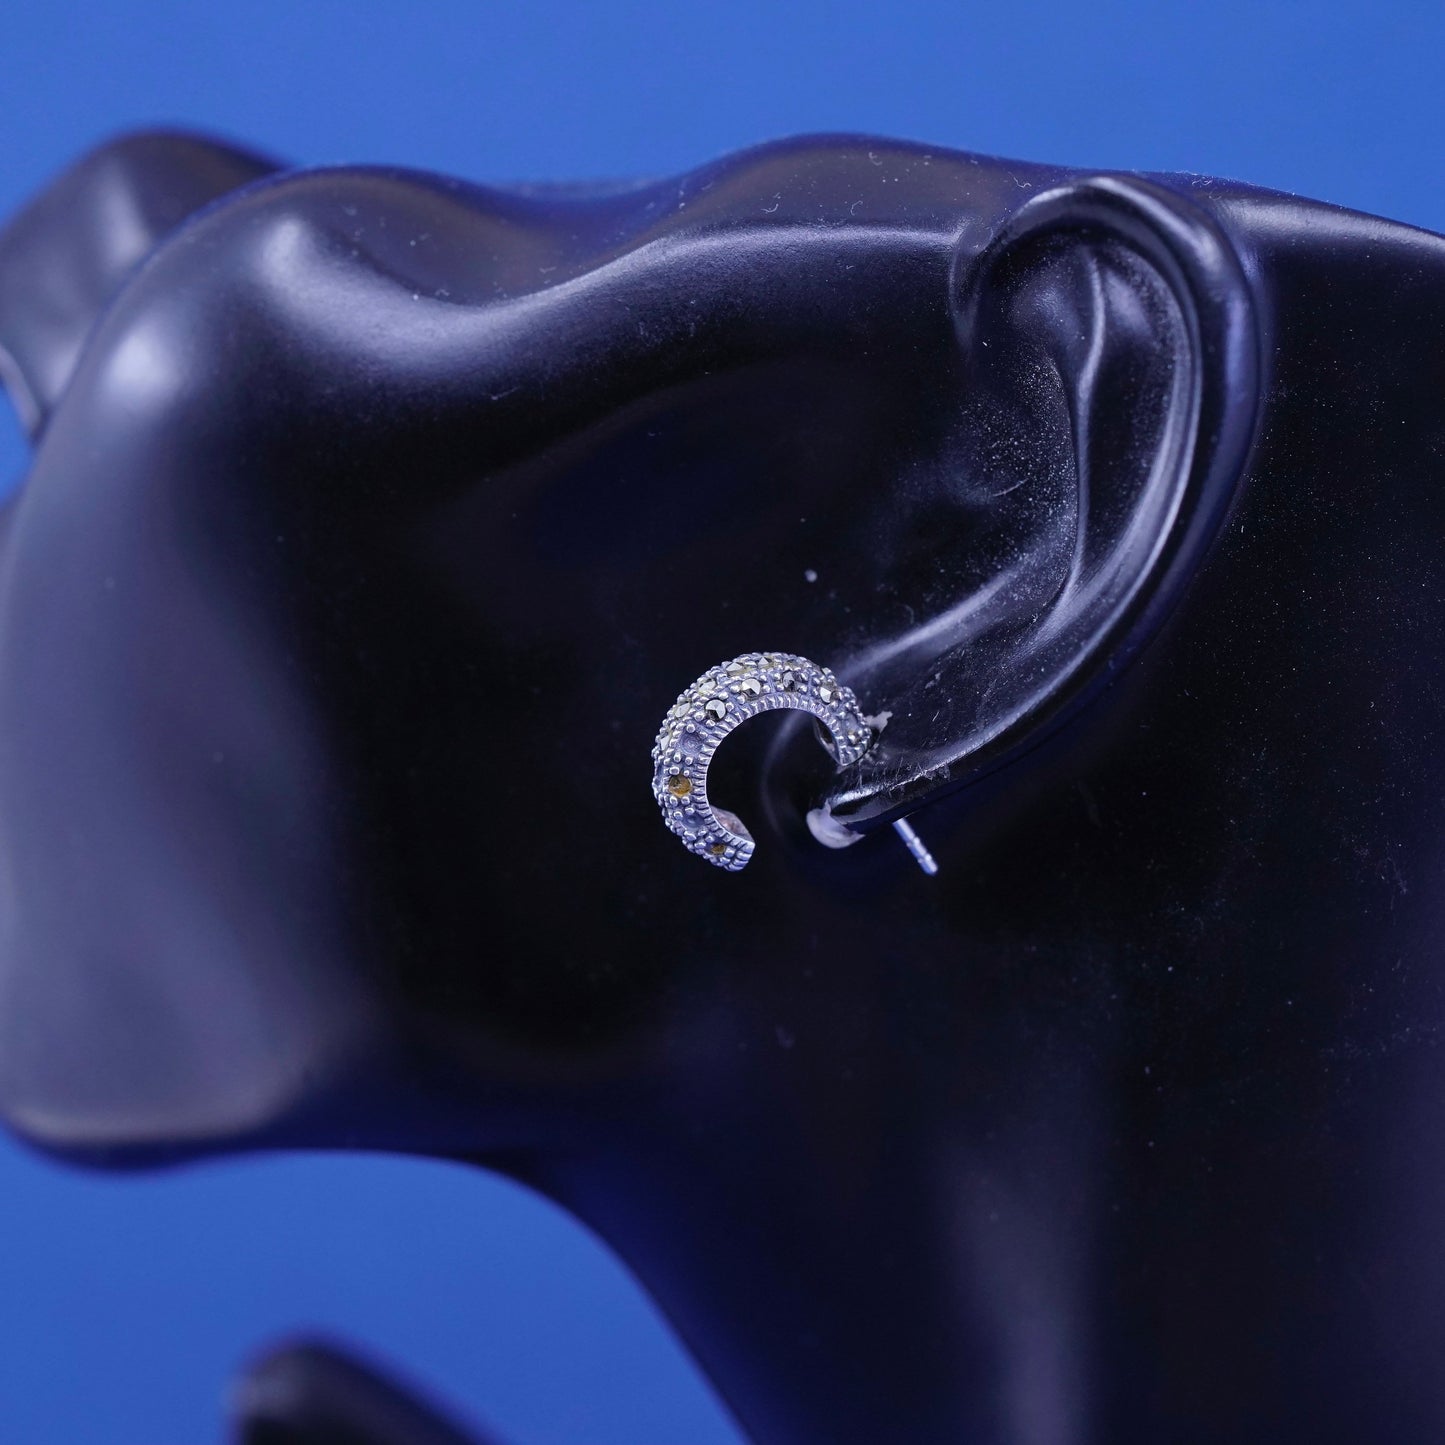 0.5”, Sterling silver handmade earrings, 925 hoops w/ marcasite details, huggie